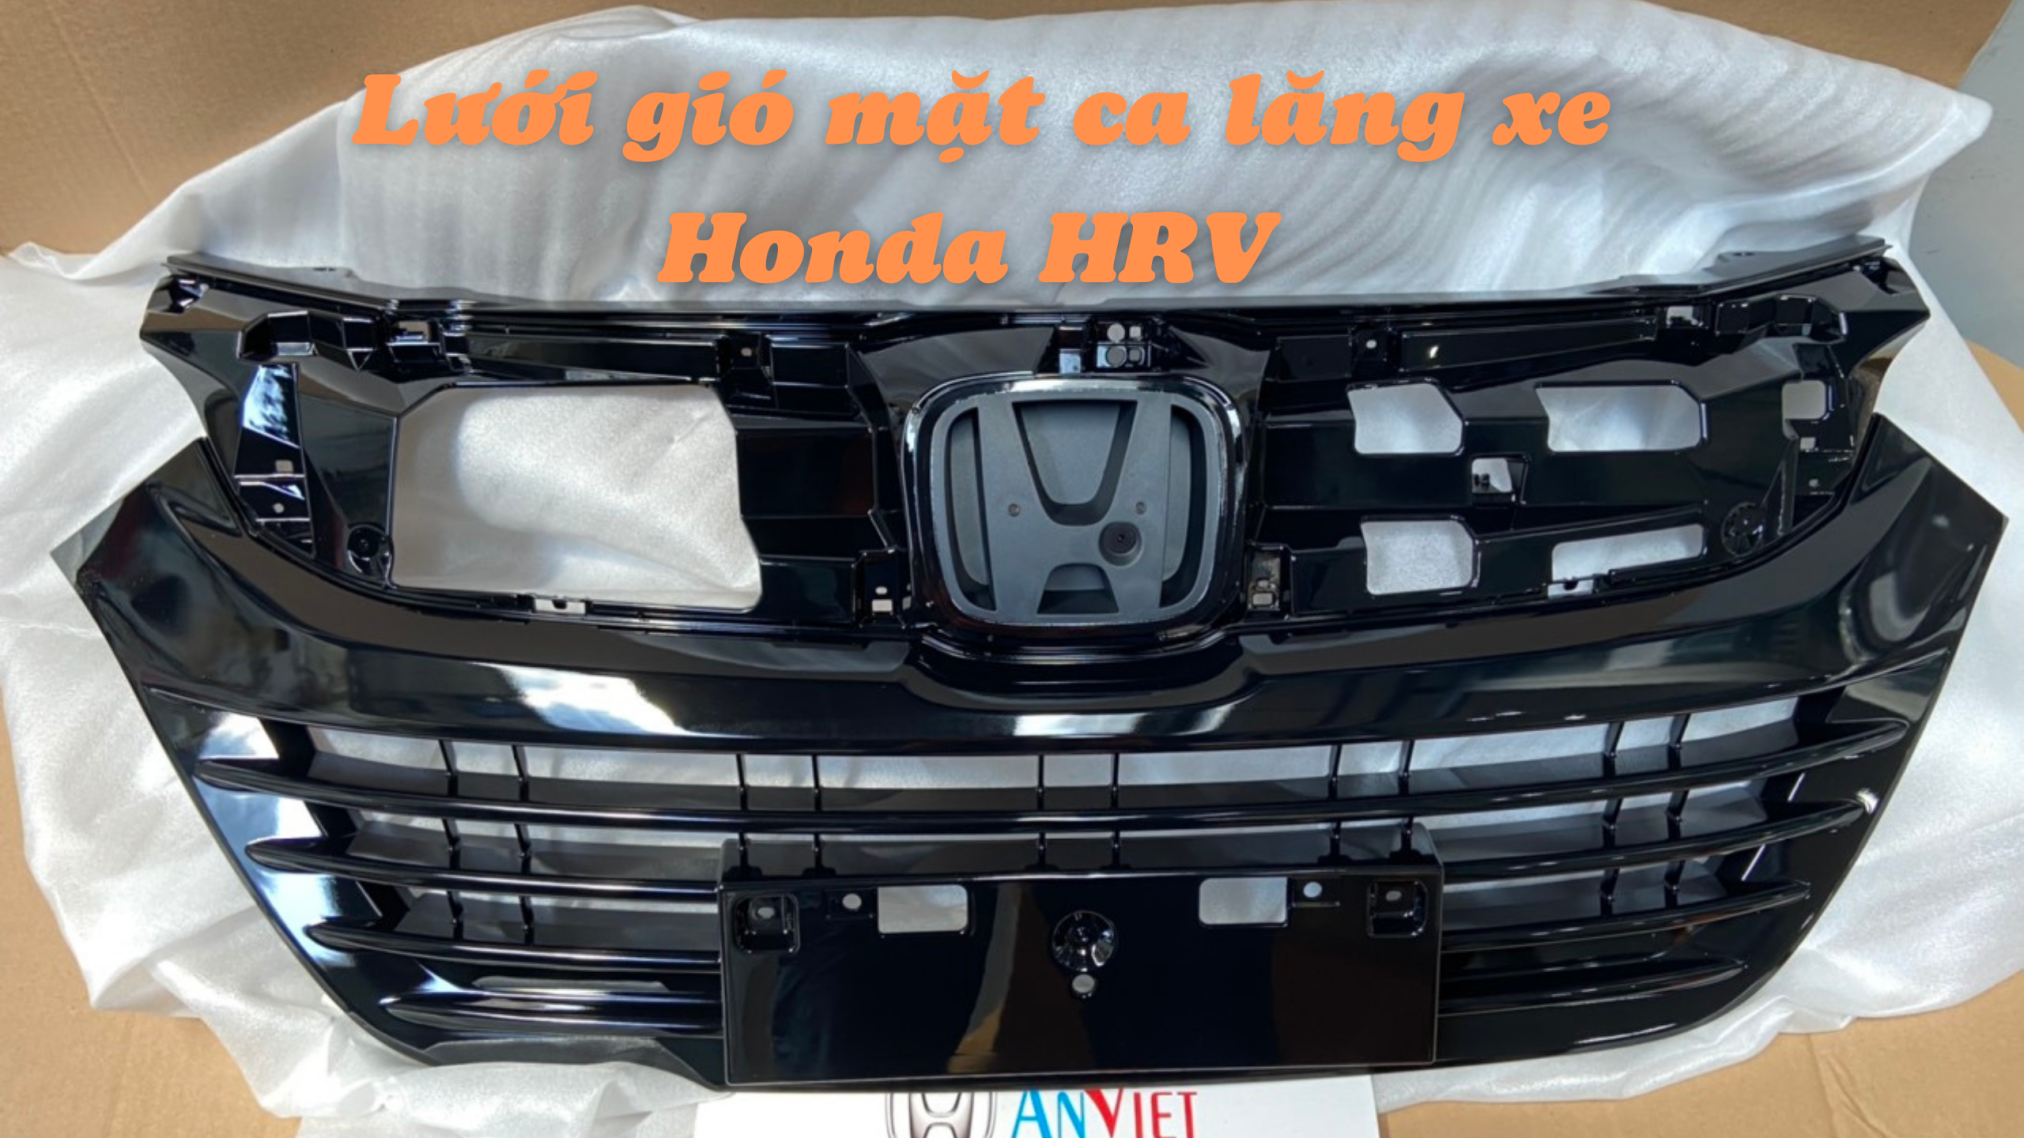 Lưới gió mặt ca lăng xe Honda HRV